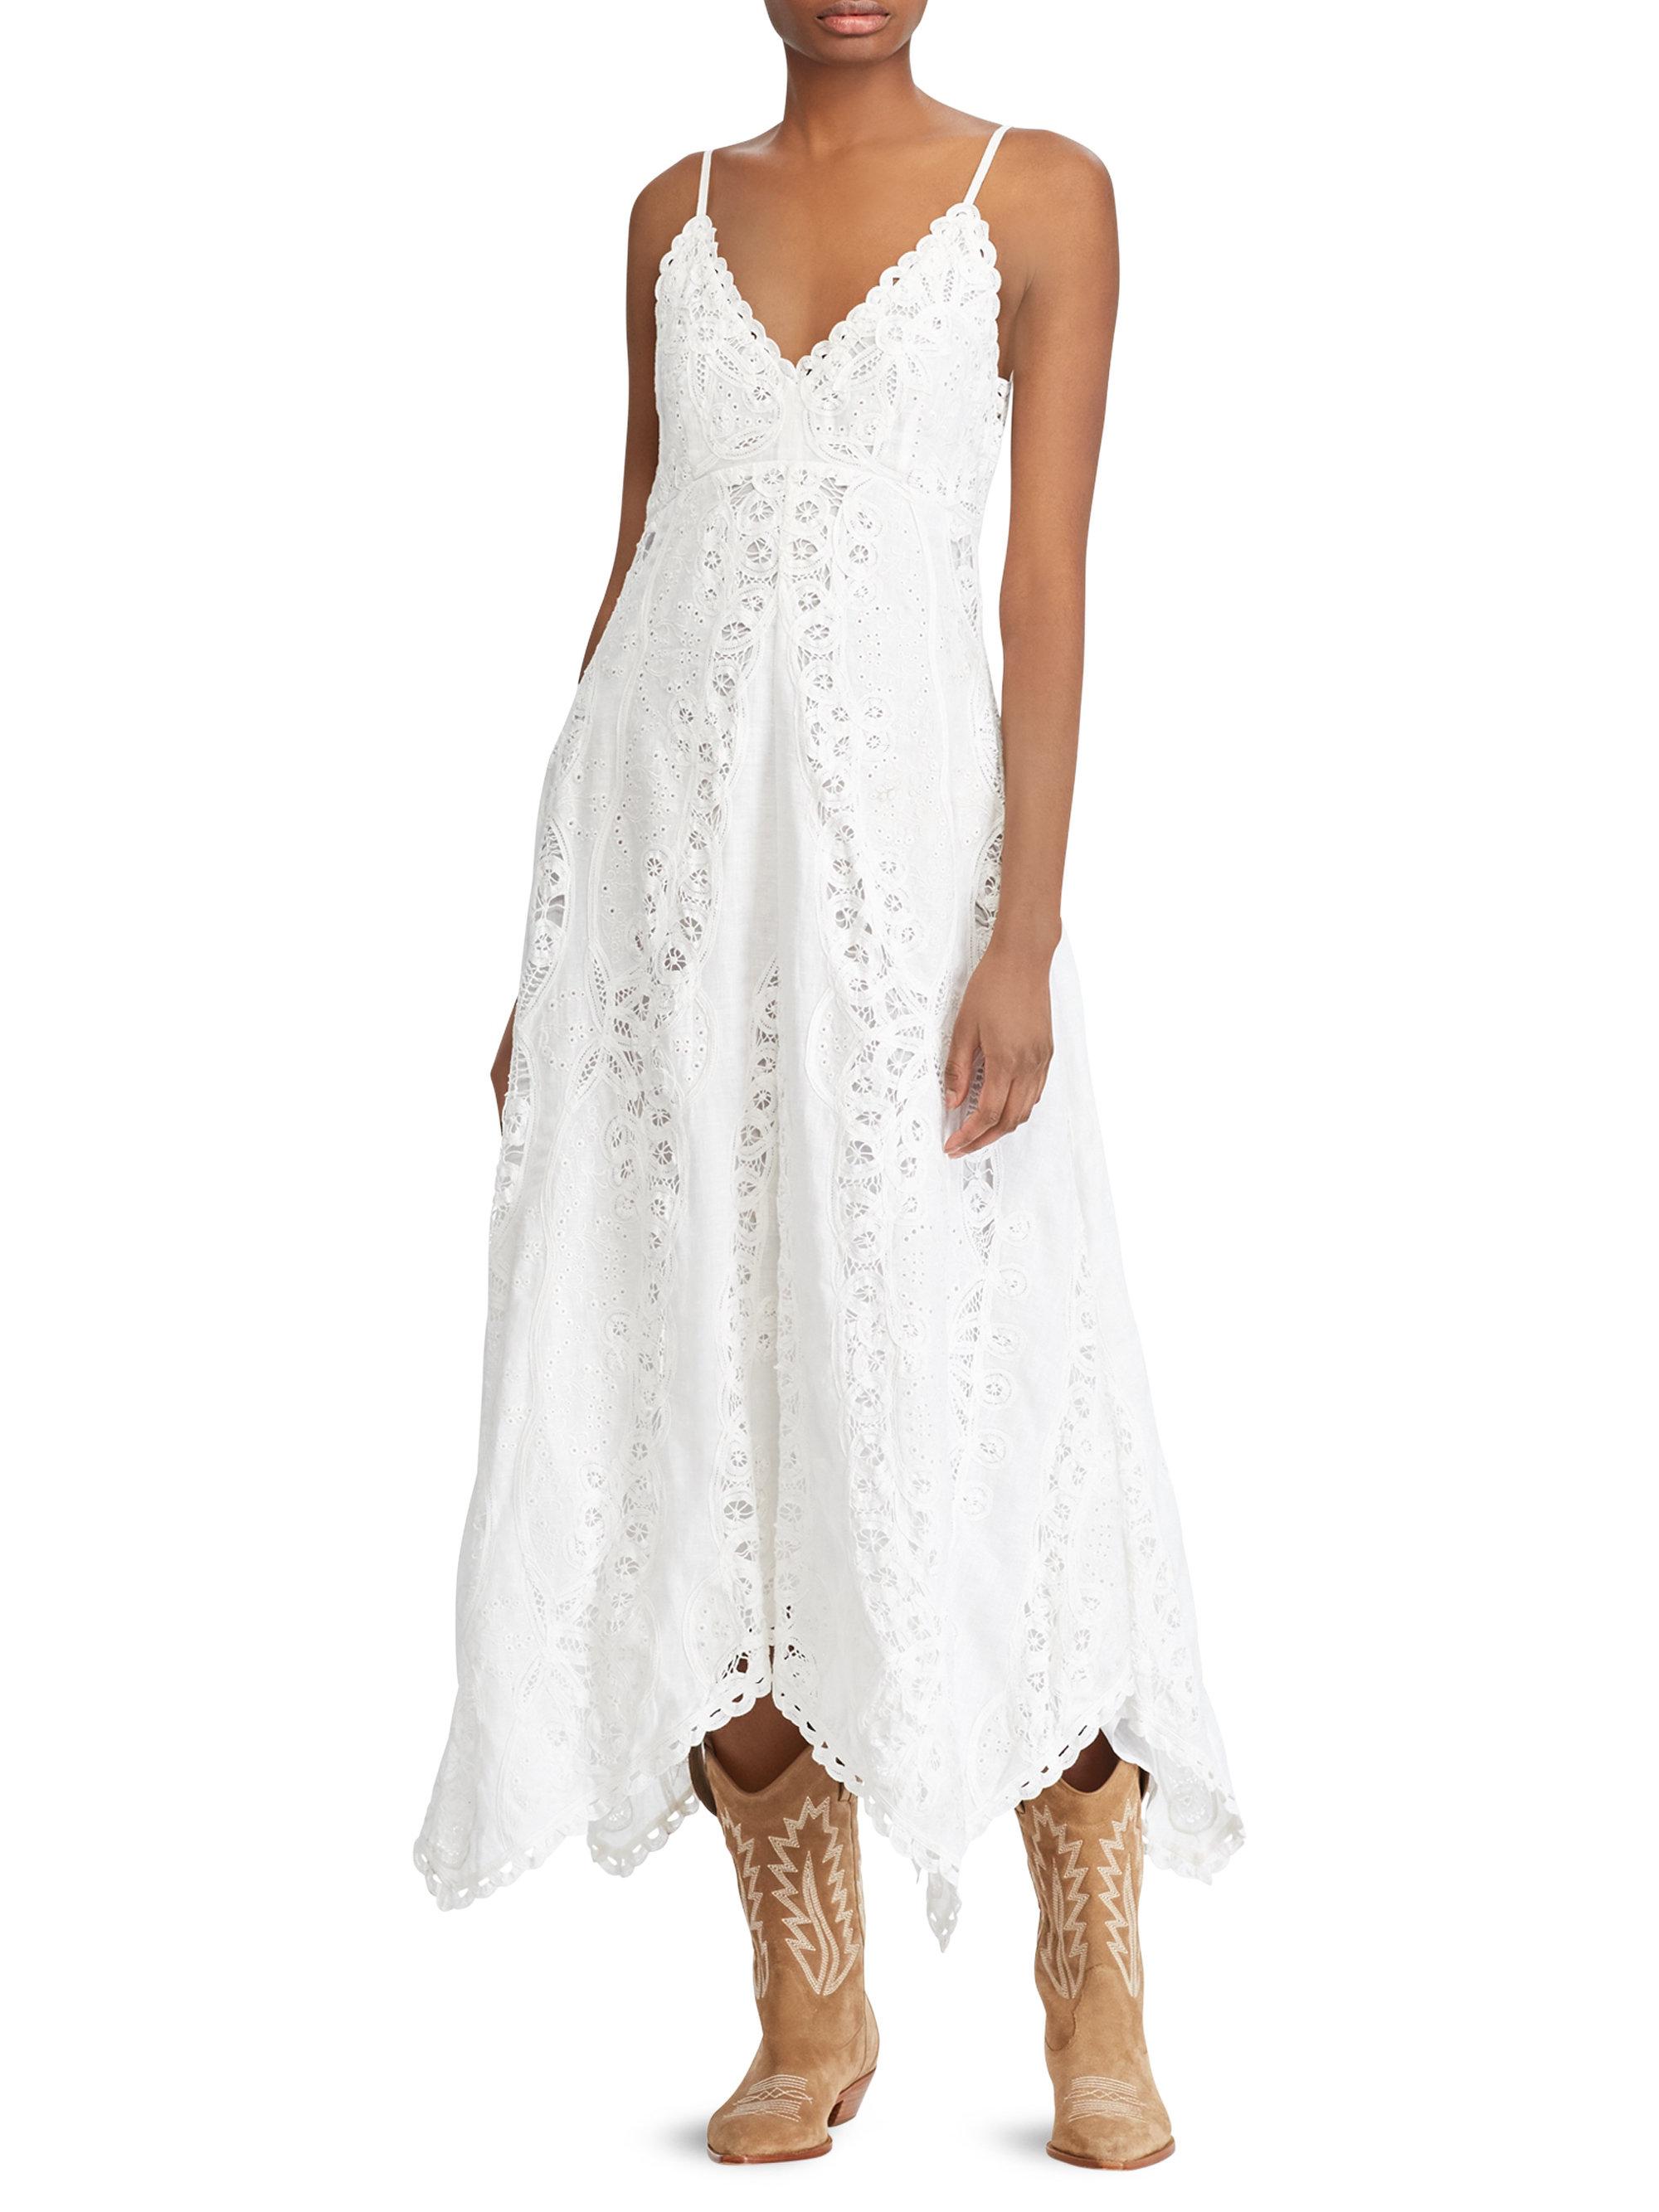 Polo Ralph Lauren Linen Maxi Dress in White - Lyst